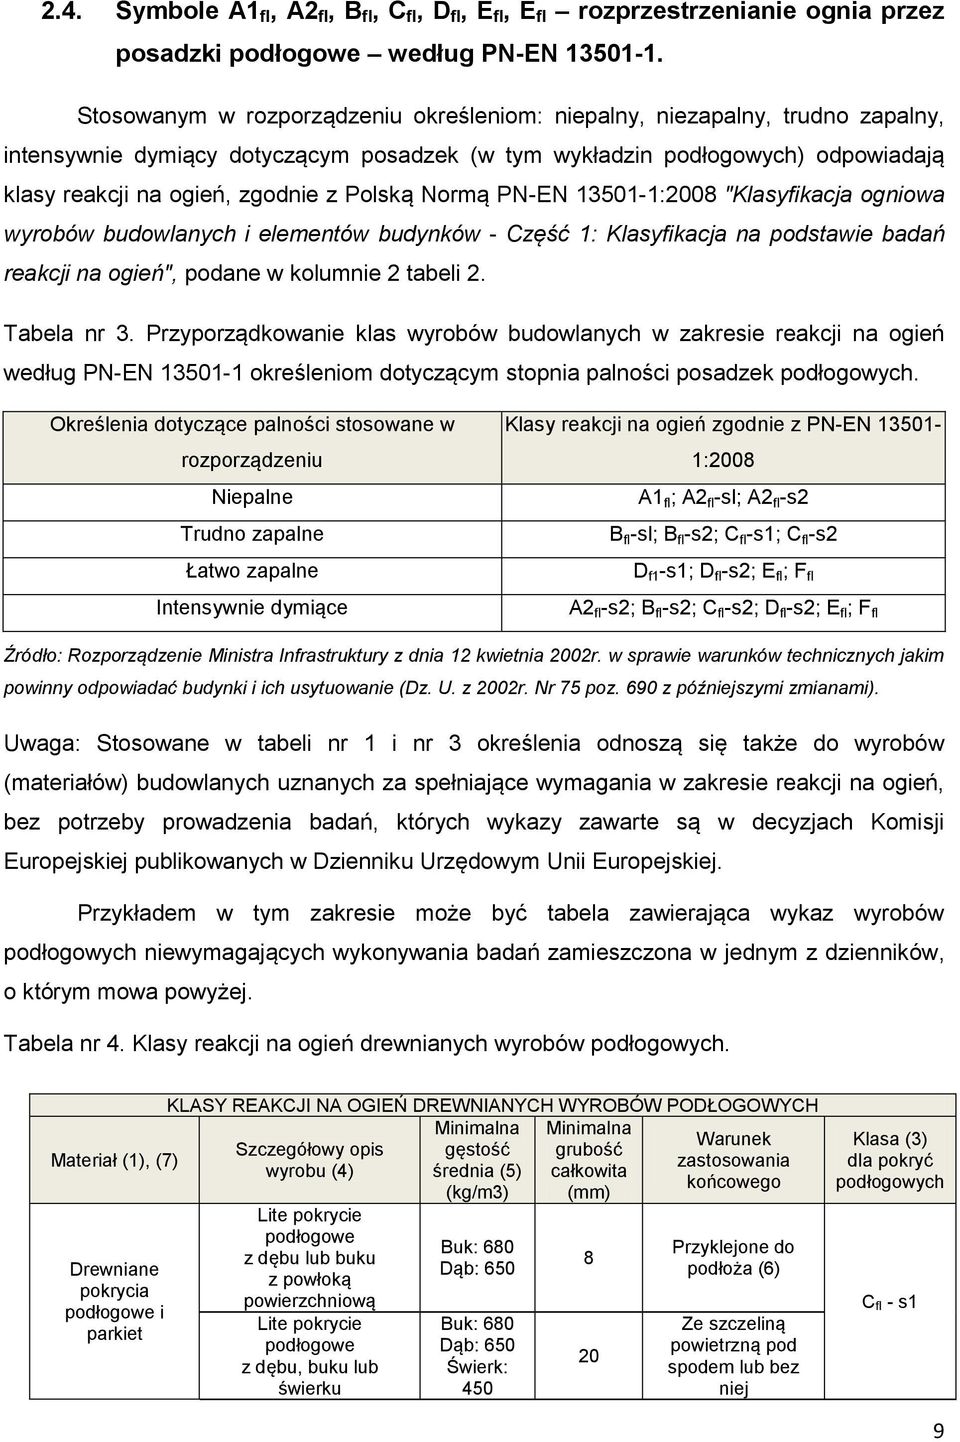 Polską Normą PN-EN 13501-1:2008 "Klasyfikacja ogniowa wyrobów budowlanych i elementów budynków - Część 1: Klasyfikacja na podstawie badań reakcji na ogień", podane w kolumnie 2 tabeli 2. Tabela nr 3.